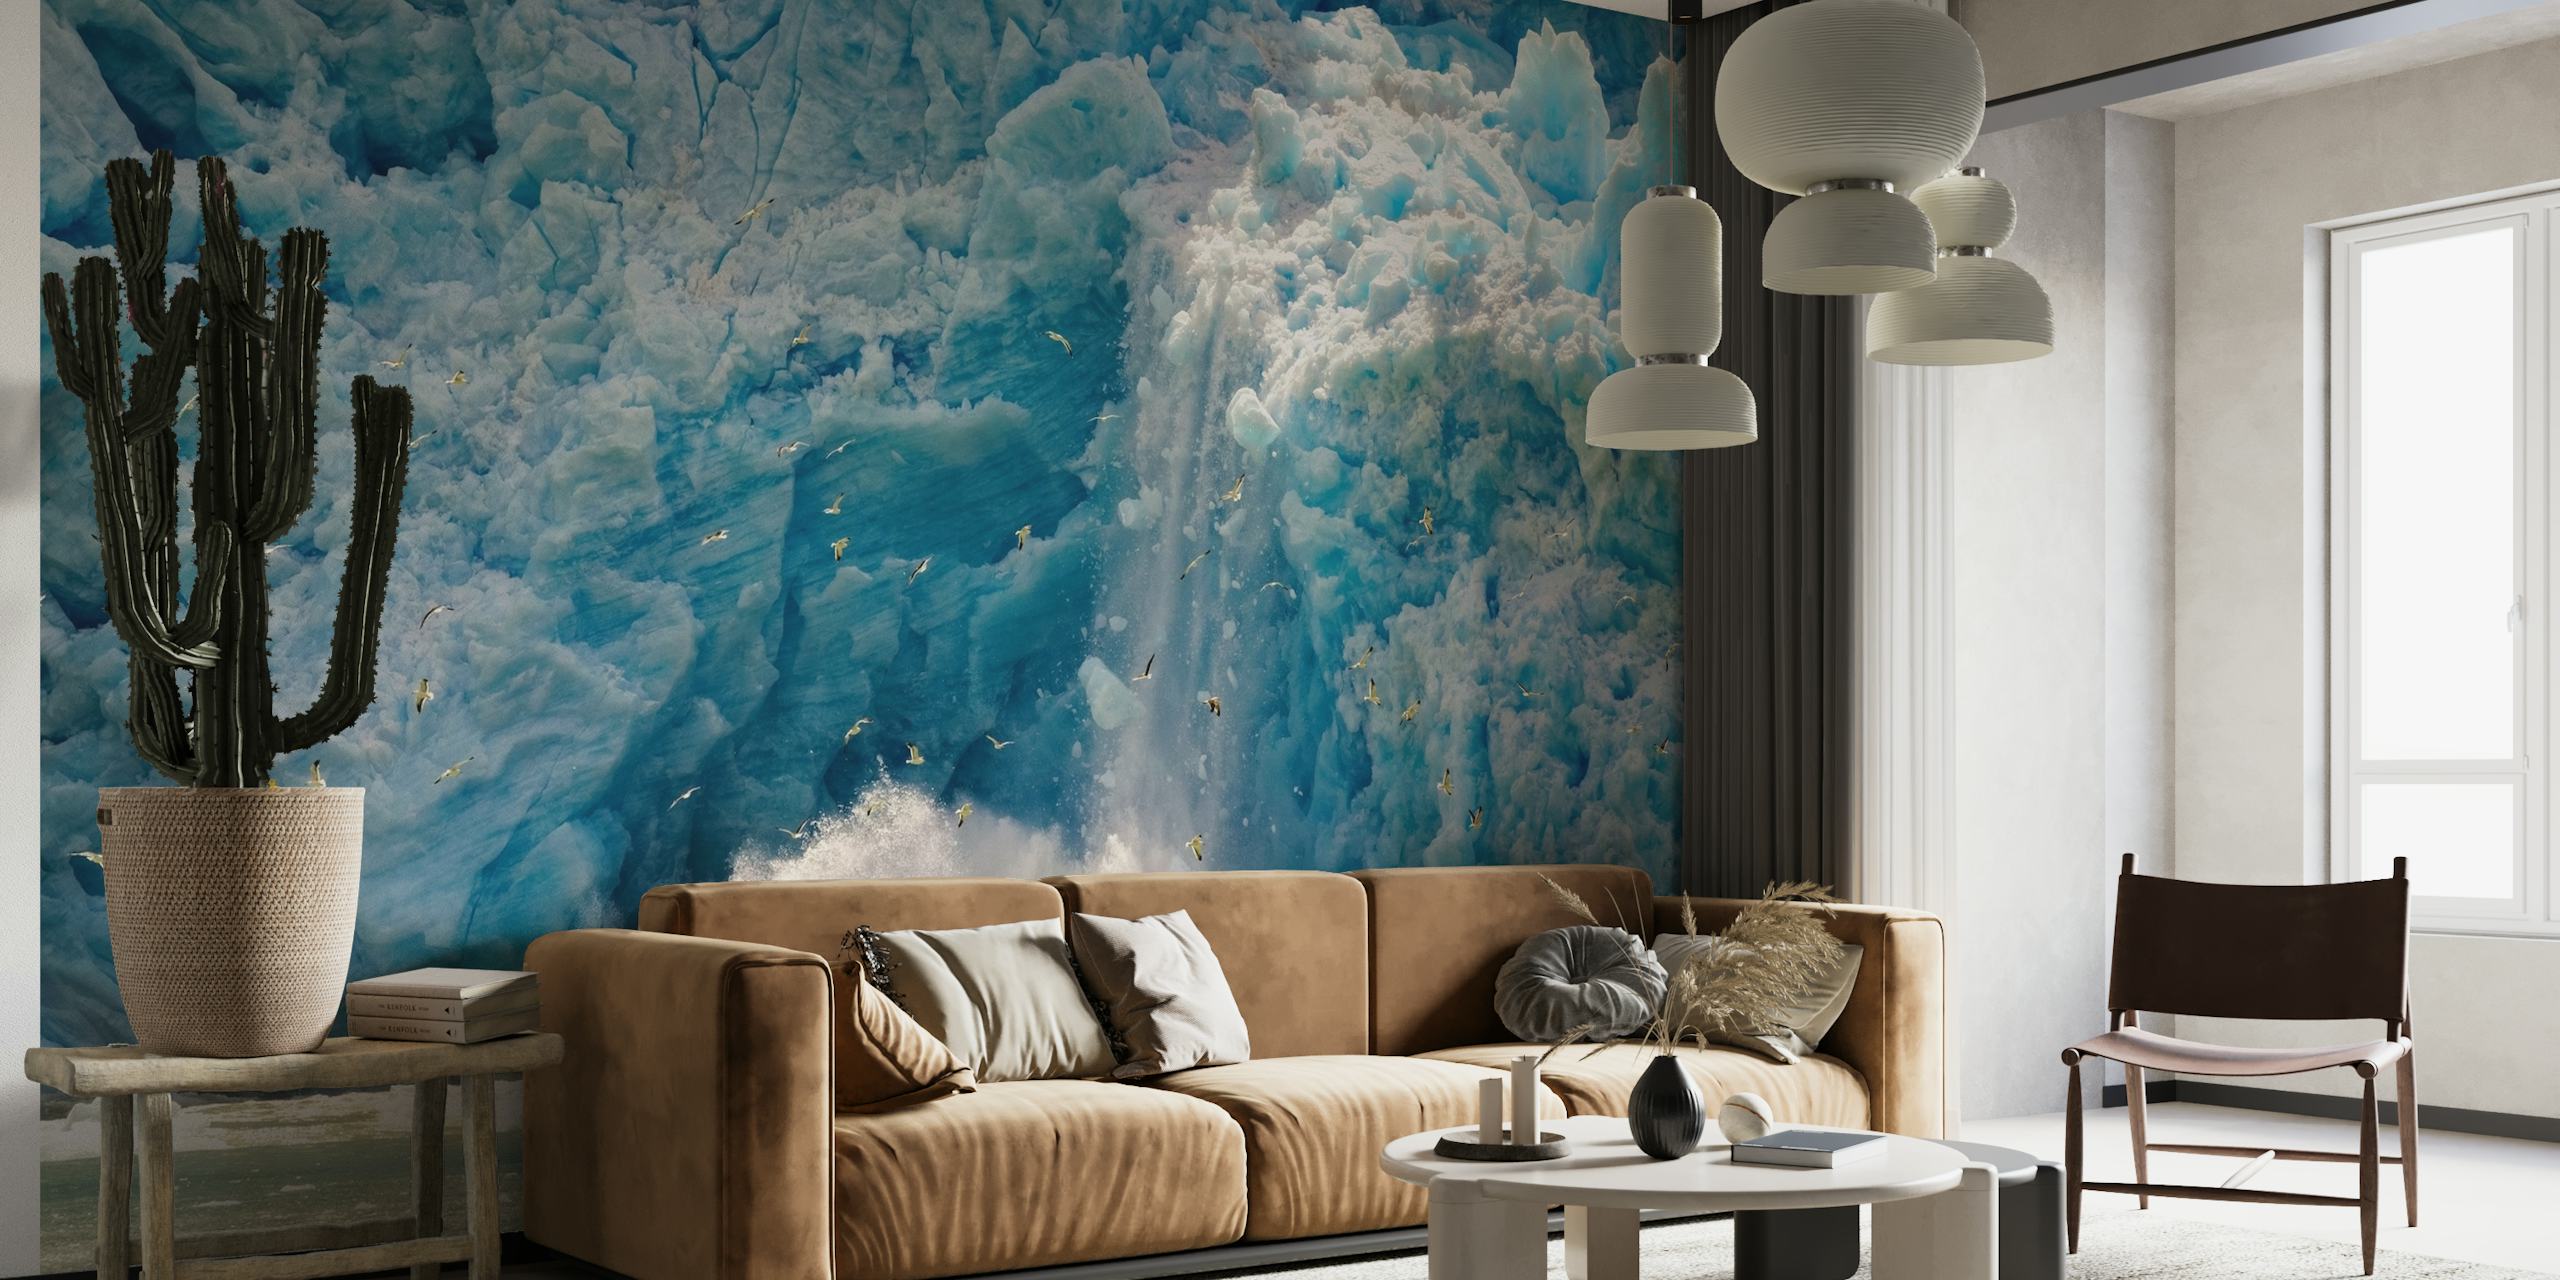 Zidni mural s motivom ledenjaka s intenzivnim plavim ledom i dinamičnim prskanjem